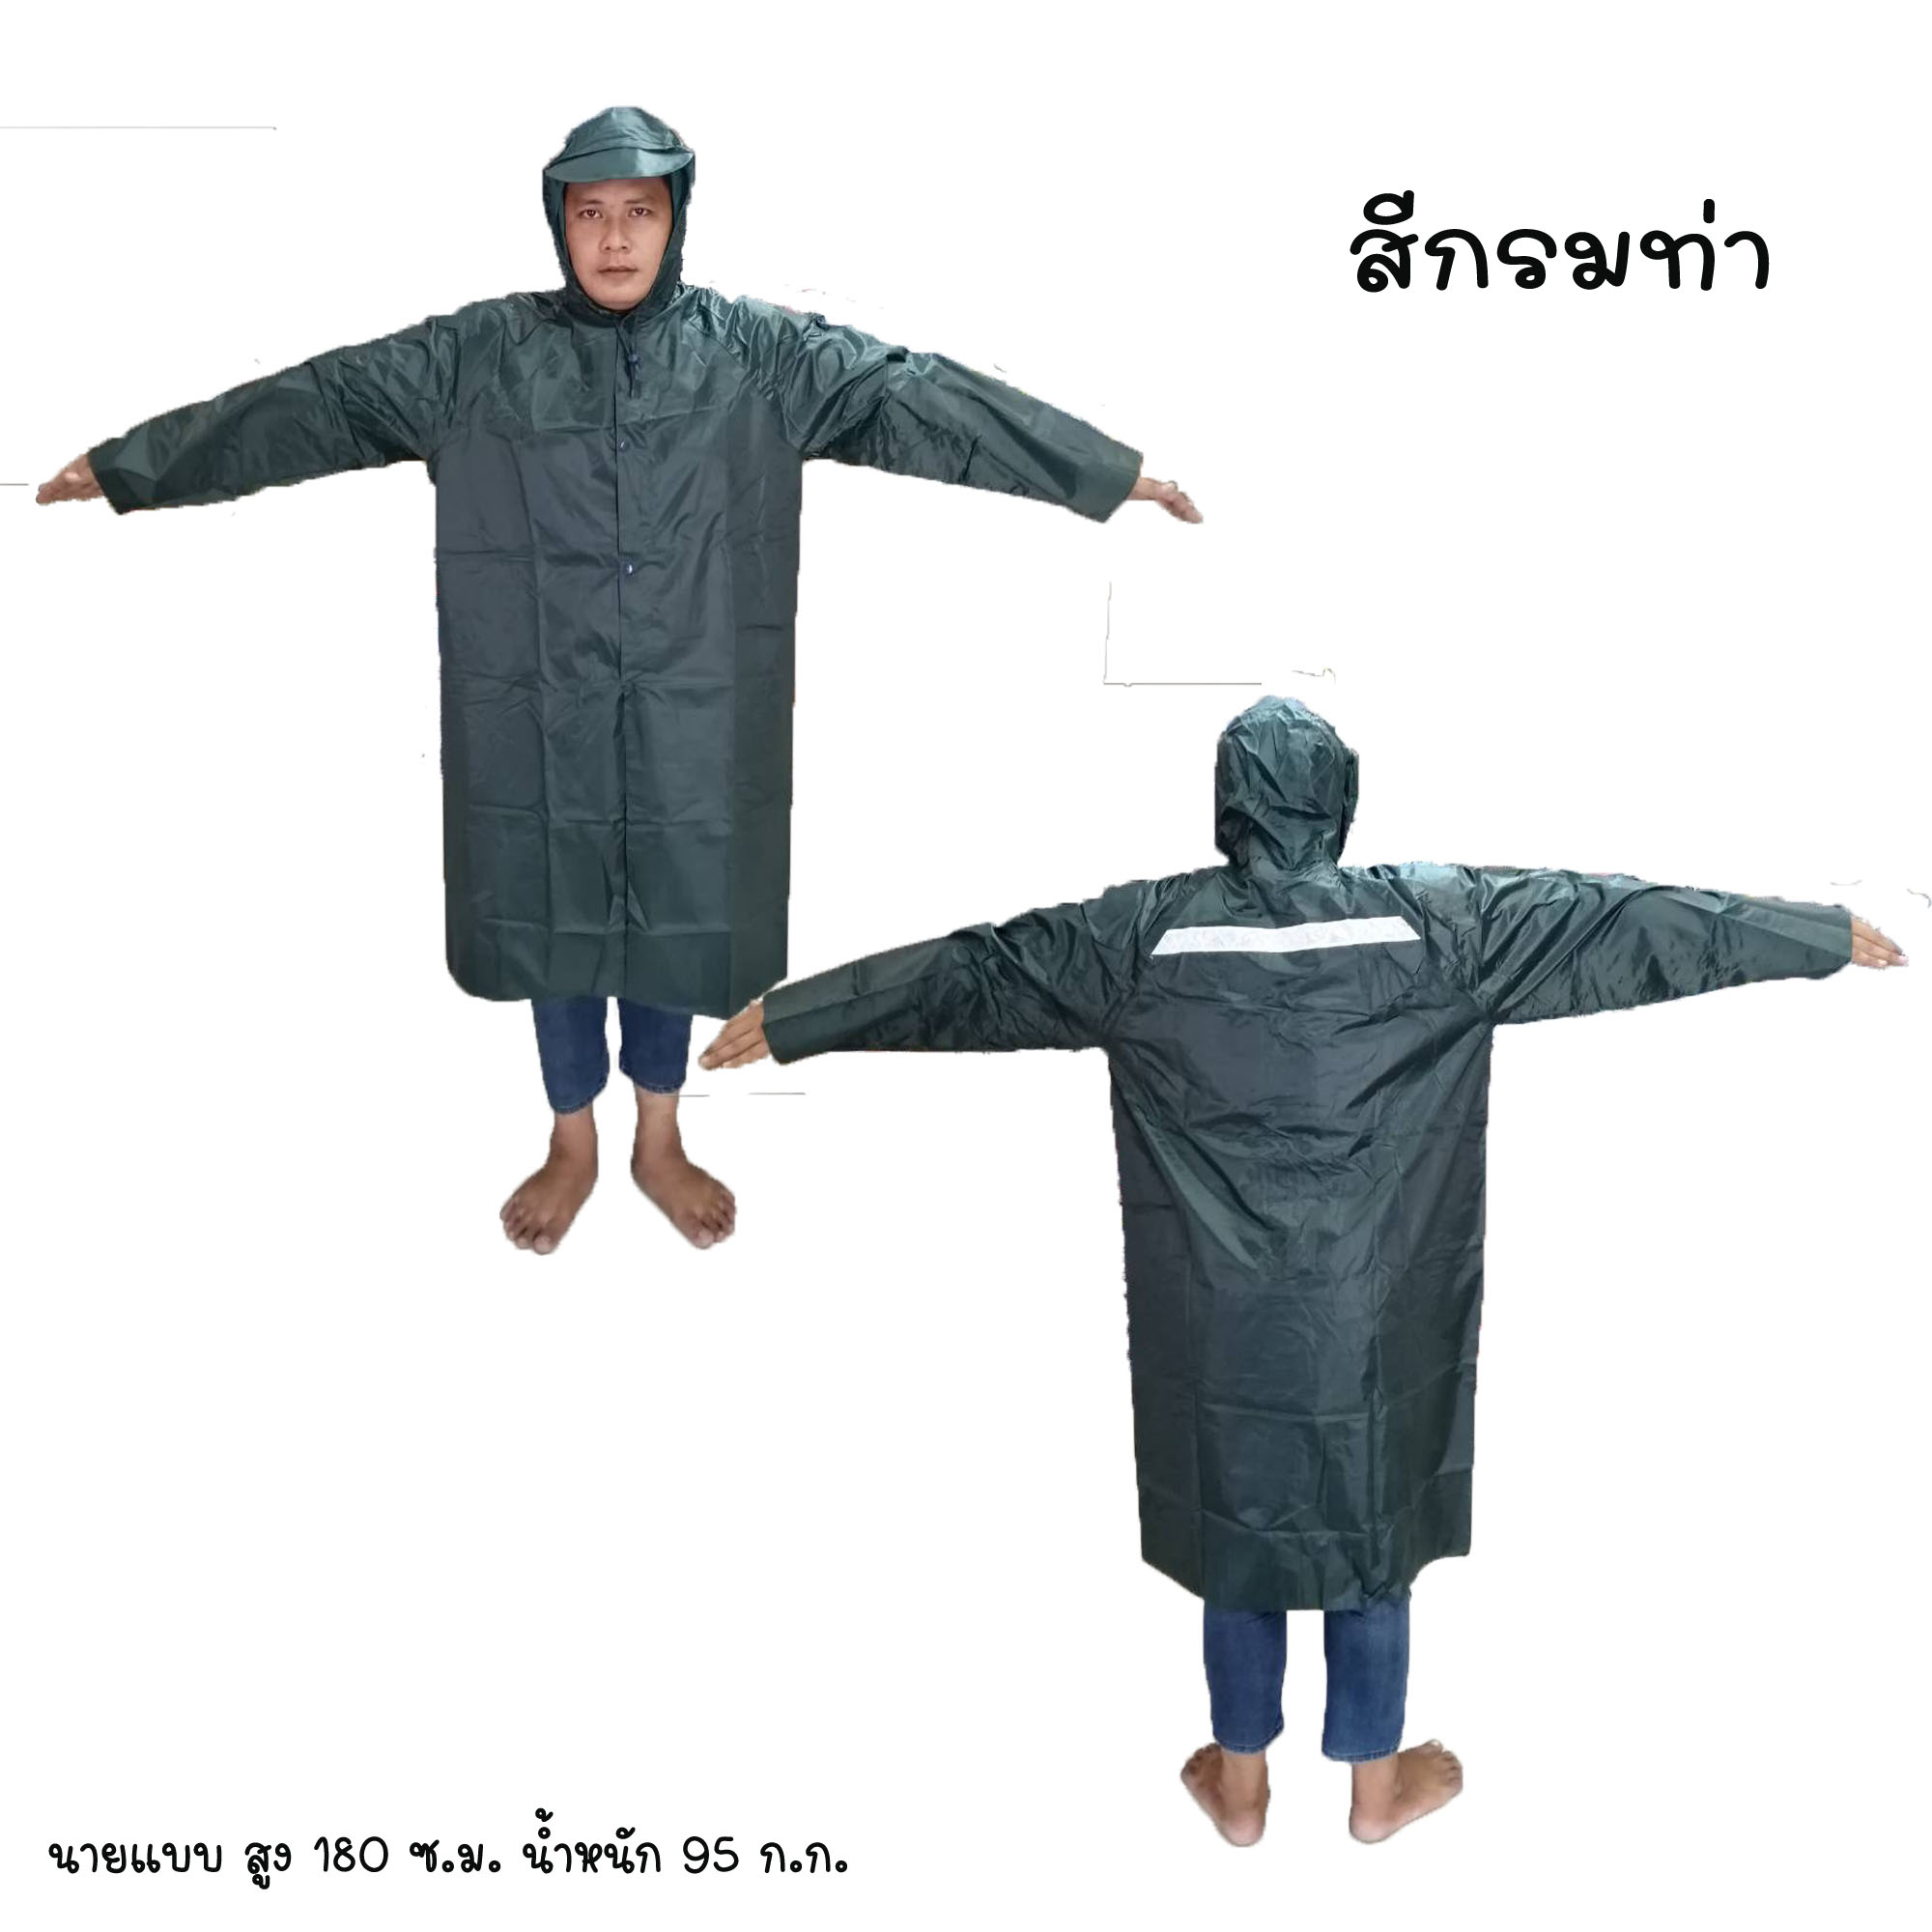 ใหม่ !!! เสื้อกันฝน  (Long Raincoat) #ช้าง998 เสื้อคลุมกันฝน ชุดกันฝน แบบยาว มีแถบสะท้อนแสงด้านหลัง กันฝนได้อย่างดี มีฮู้ดในตัว พร้อมซองใส่